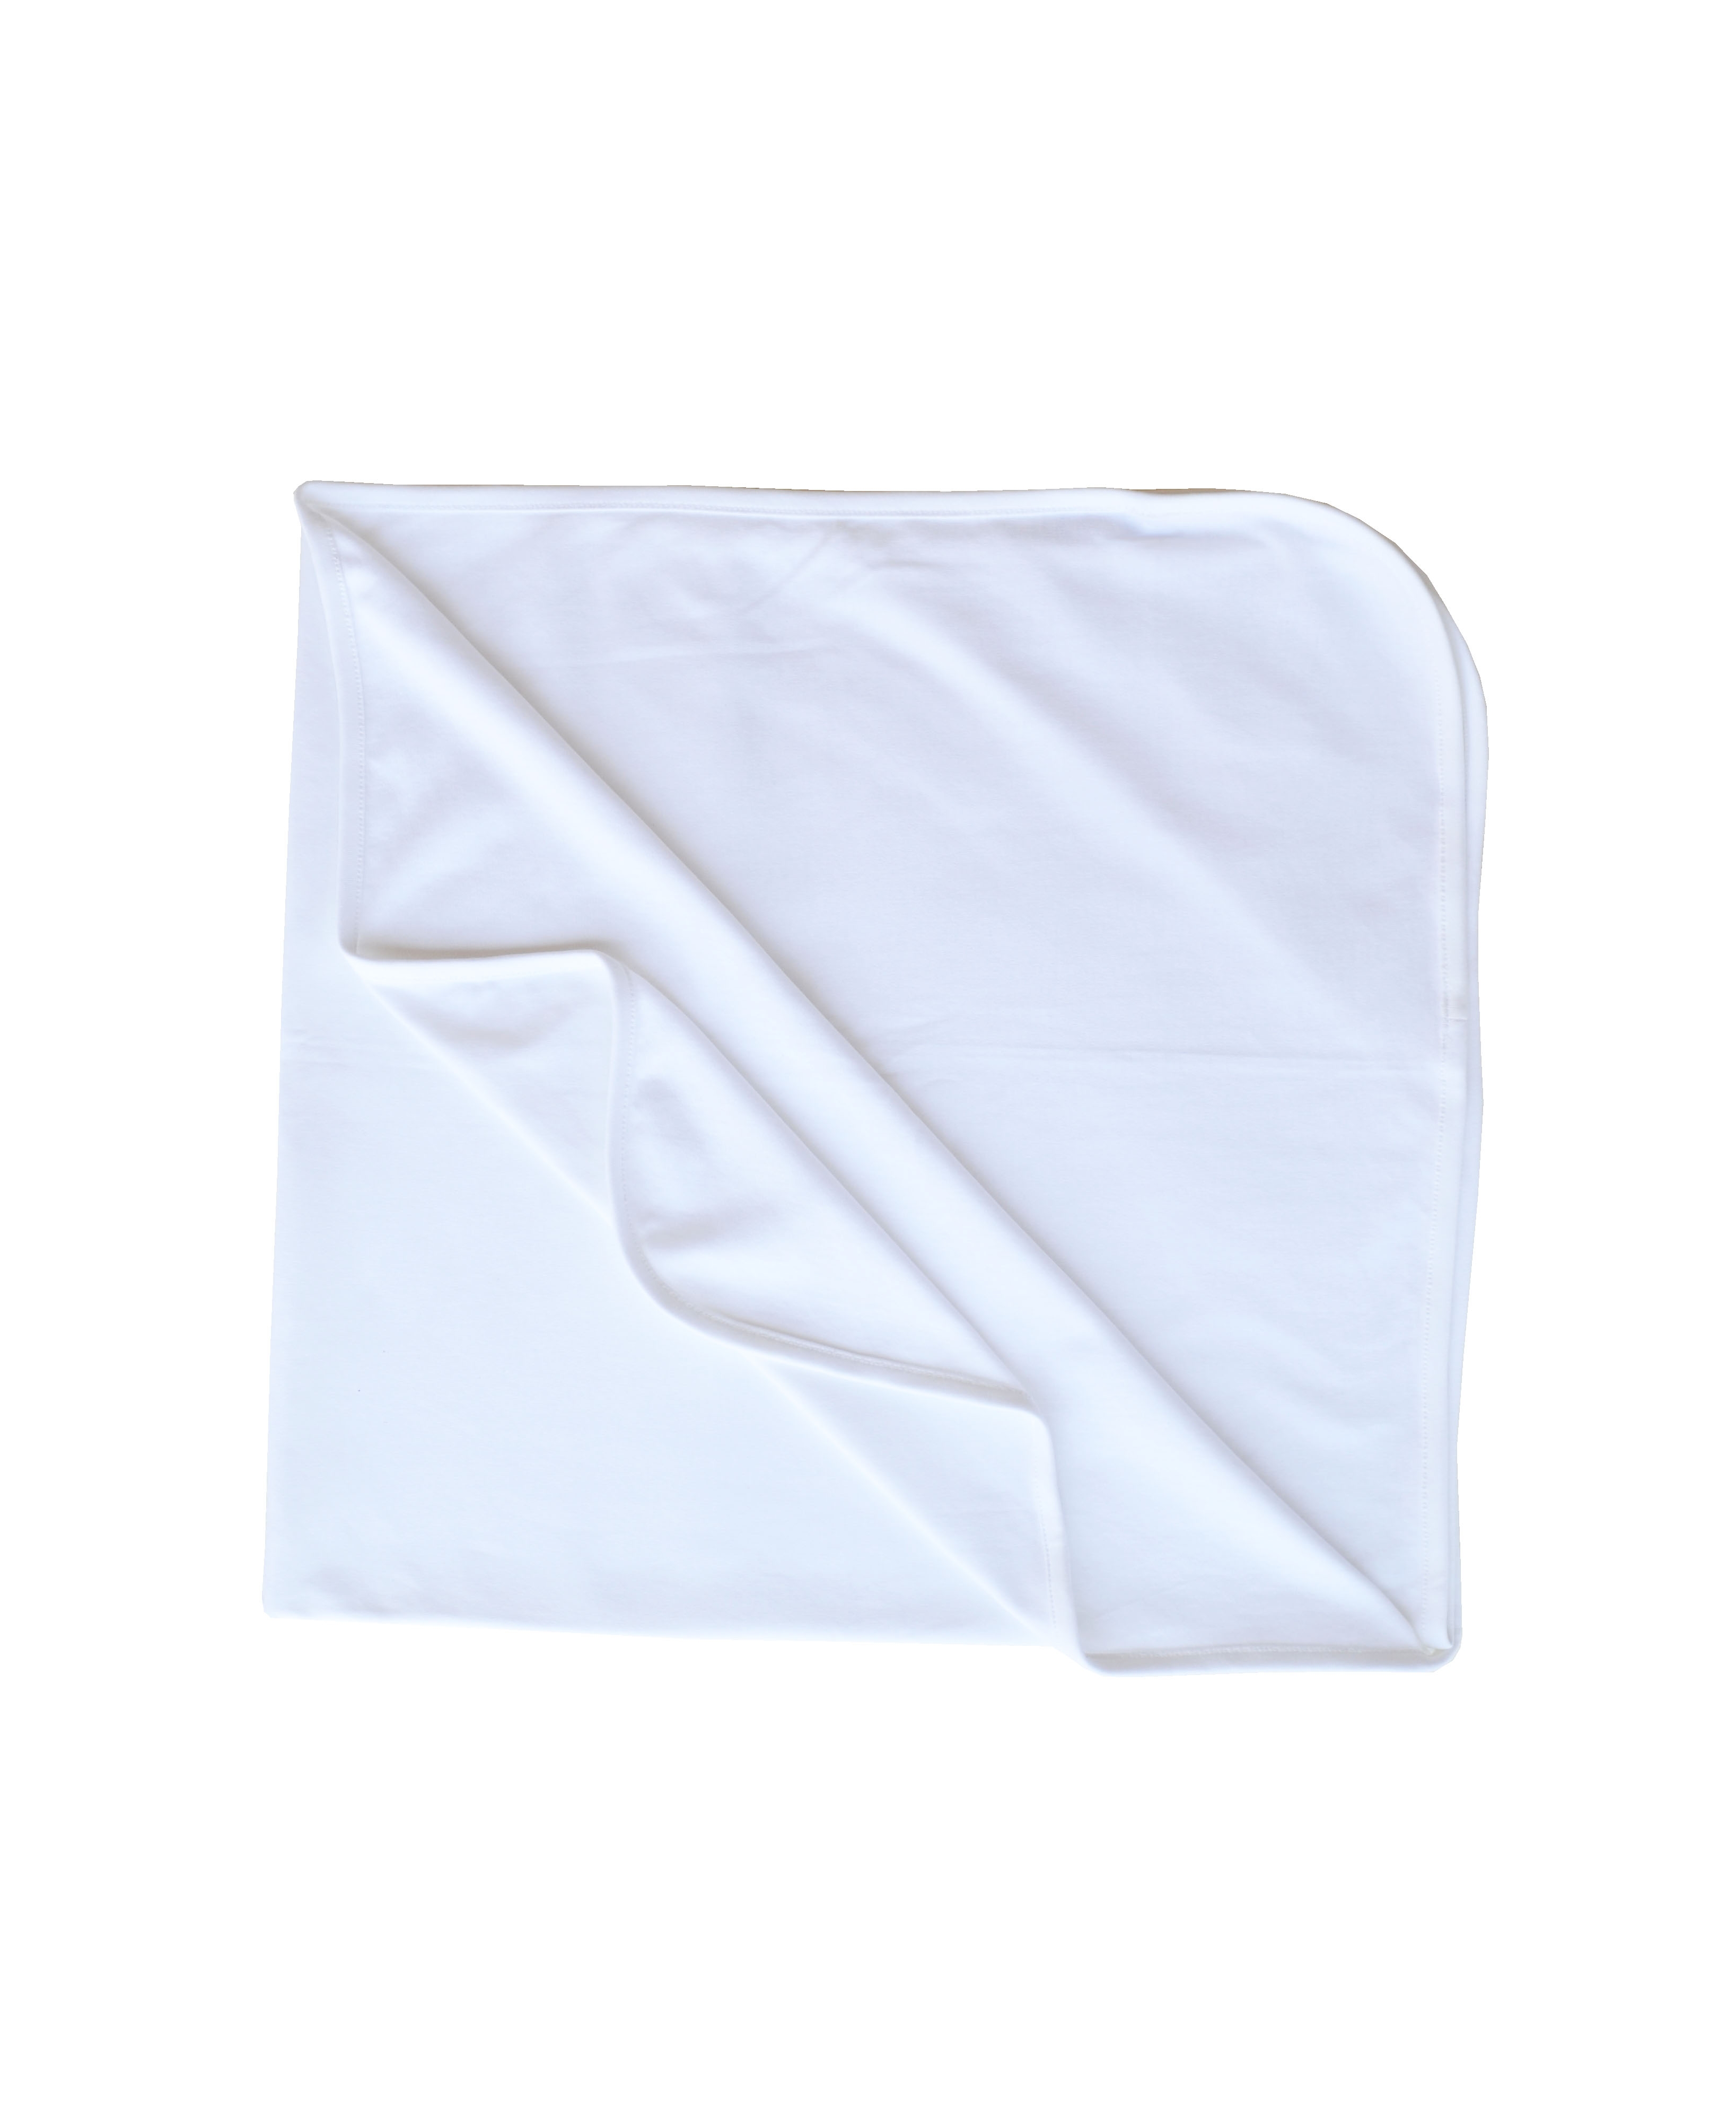 White Blanket (100% Cotton Interlock Biowash)